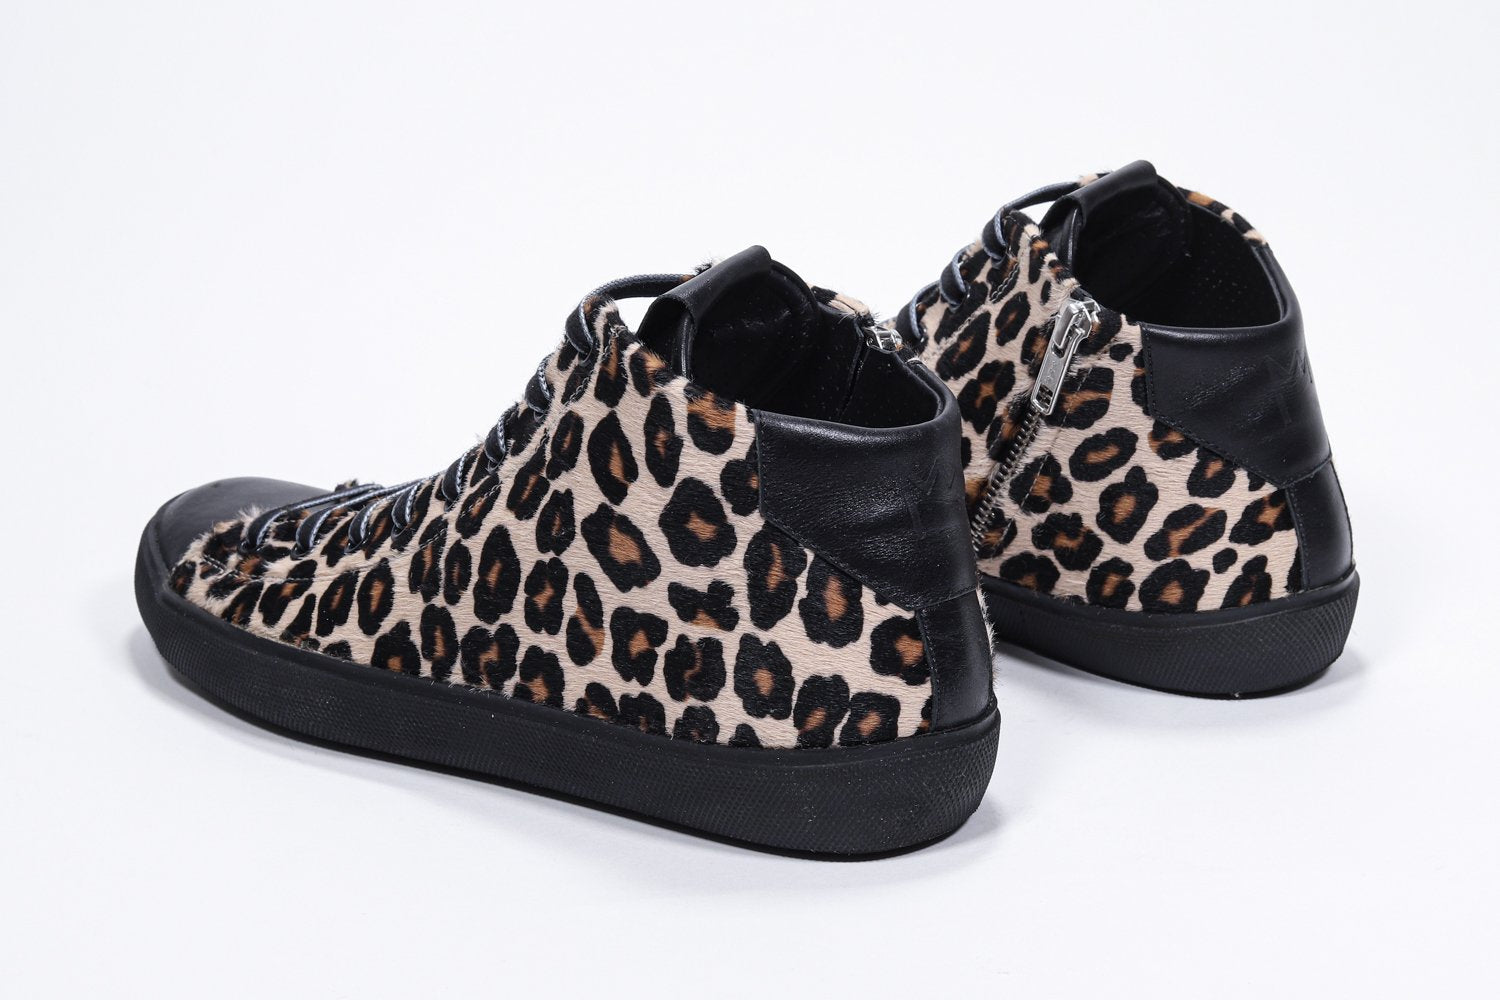 Vue de trois quarts arrière de l'imprimé léopard sneaker avec tige en cuir de veau pleine fleur, fermeture à glissière interne et semelle noire.